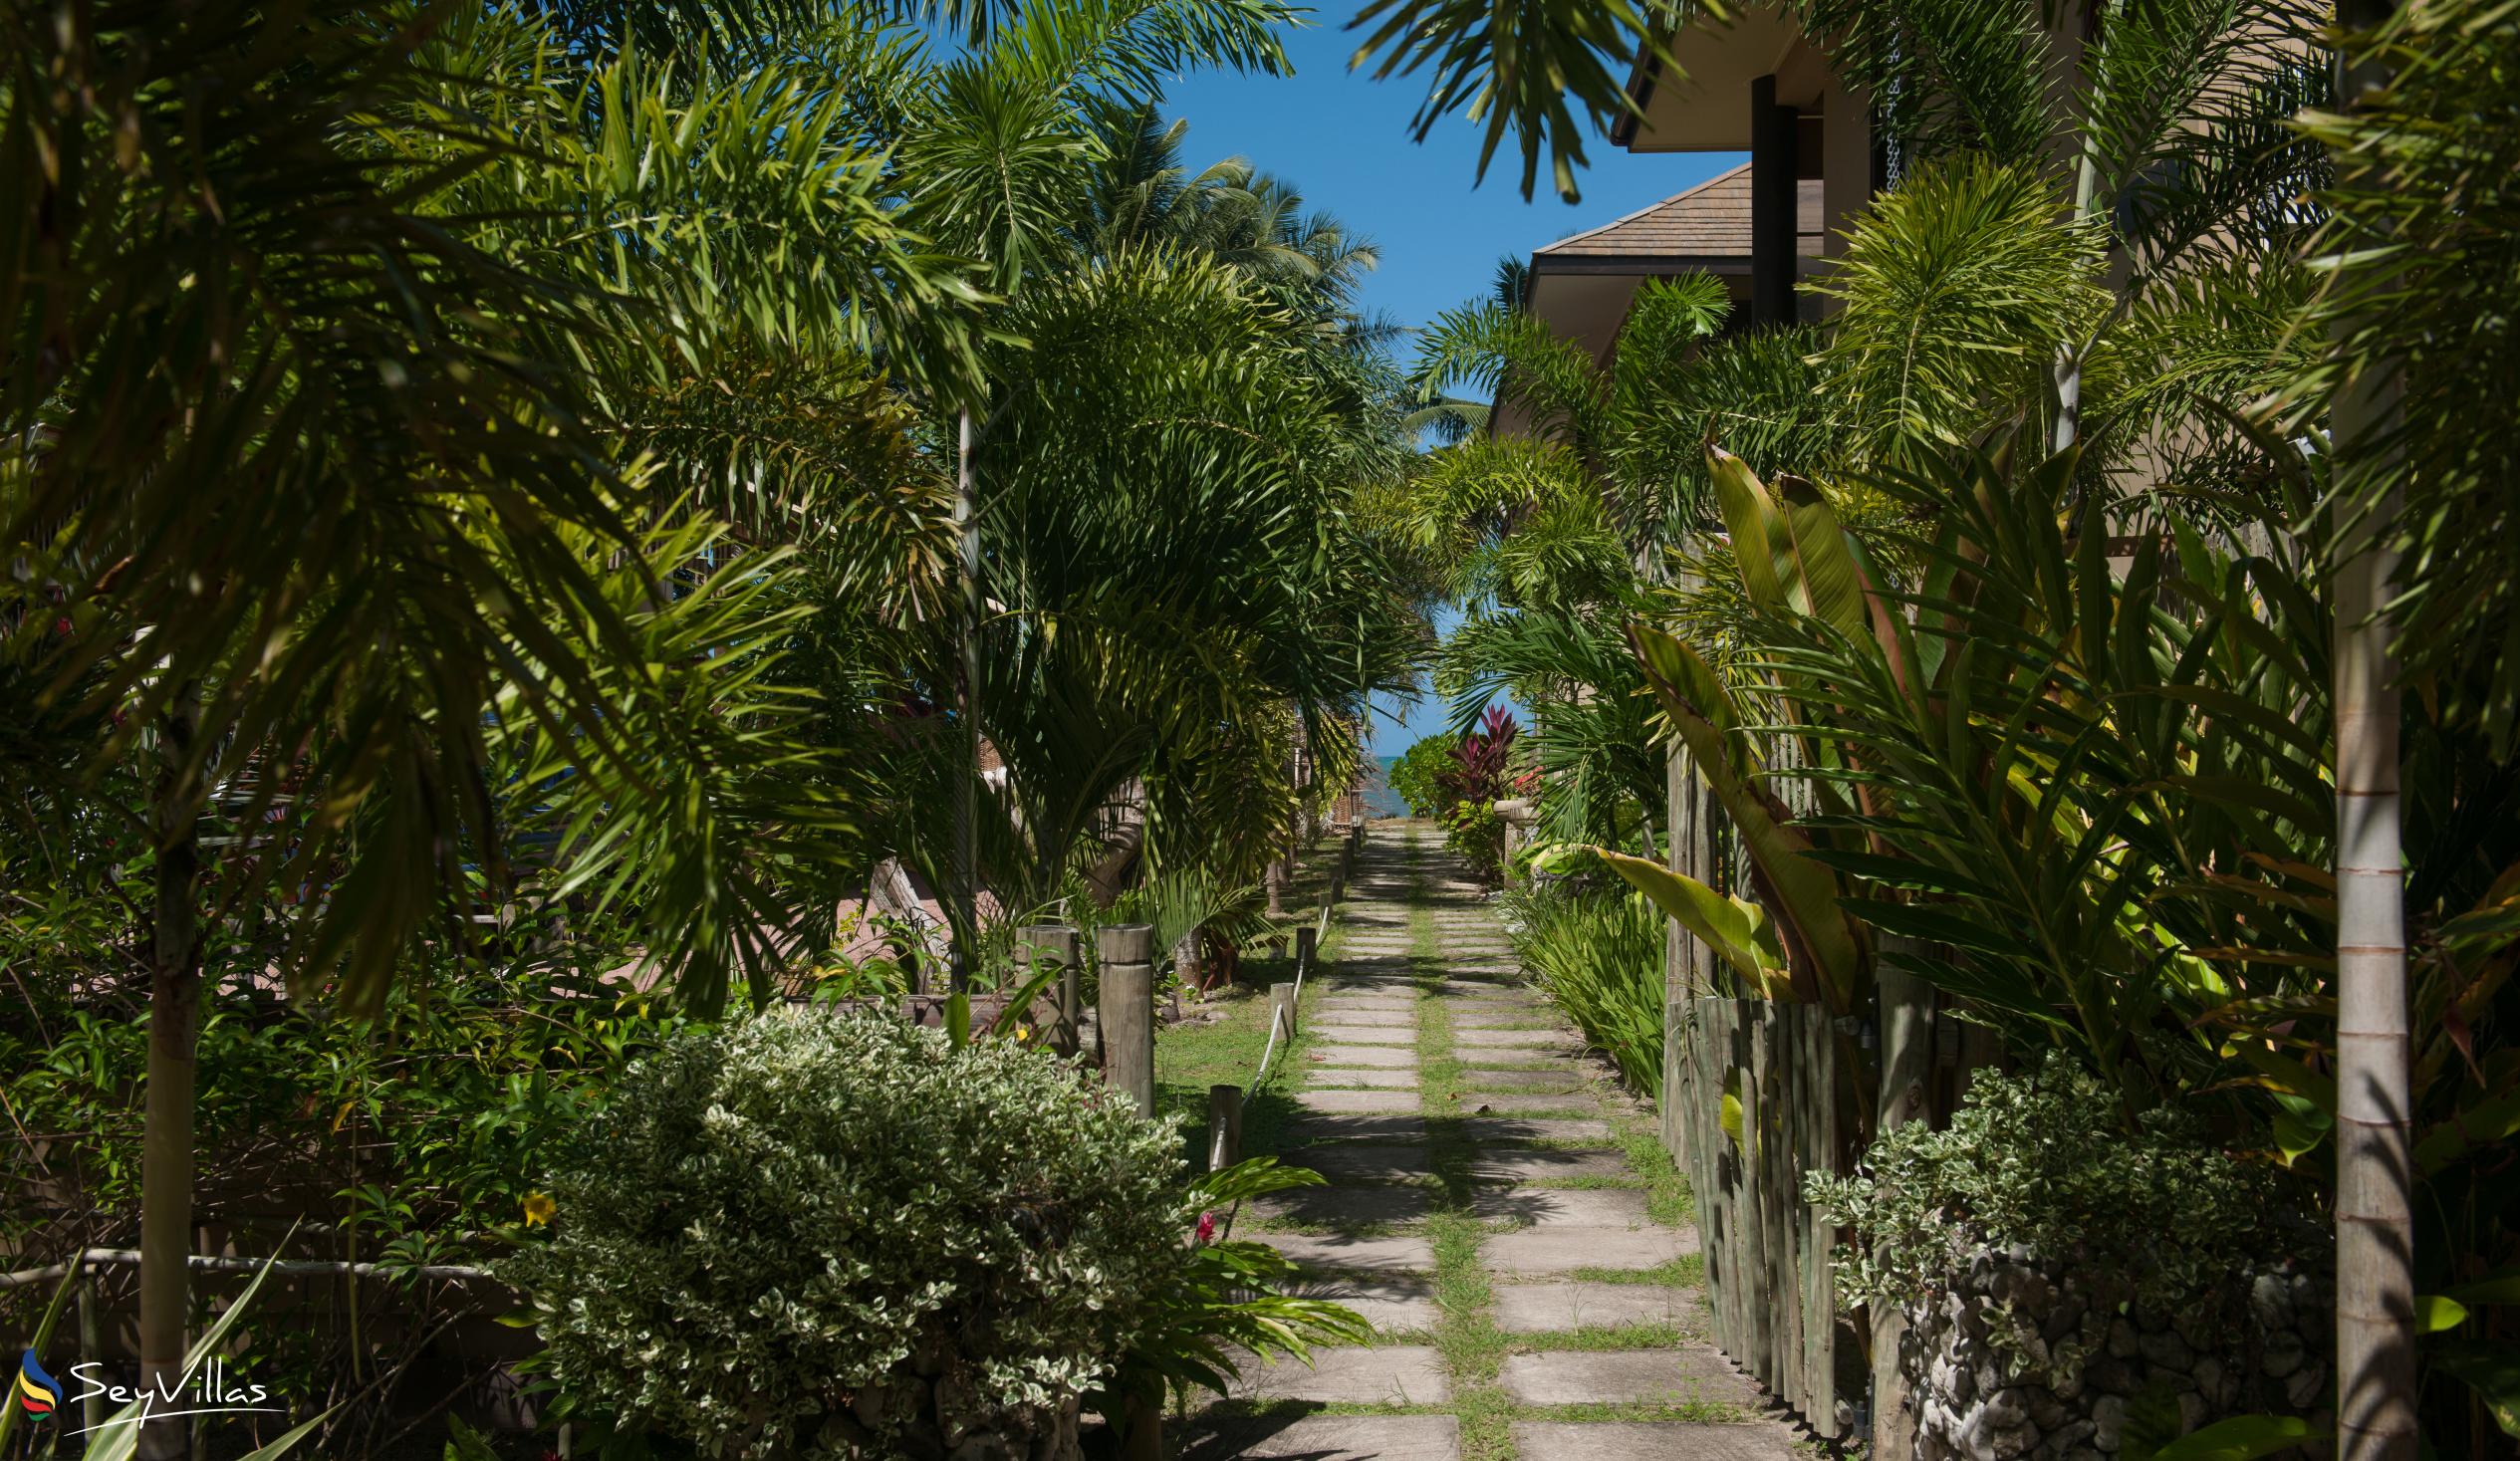 Foto 14: Villas des Alizes - Esterno - Praslin (Seychelles)